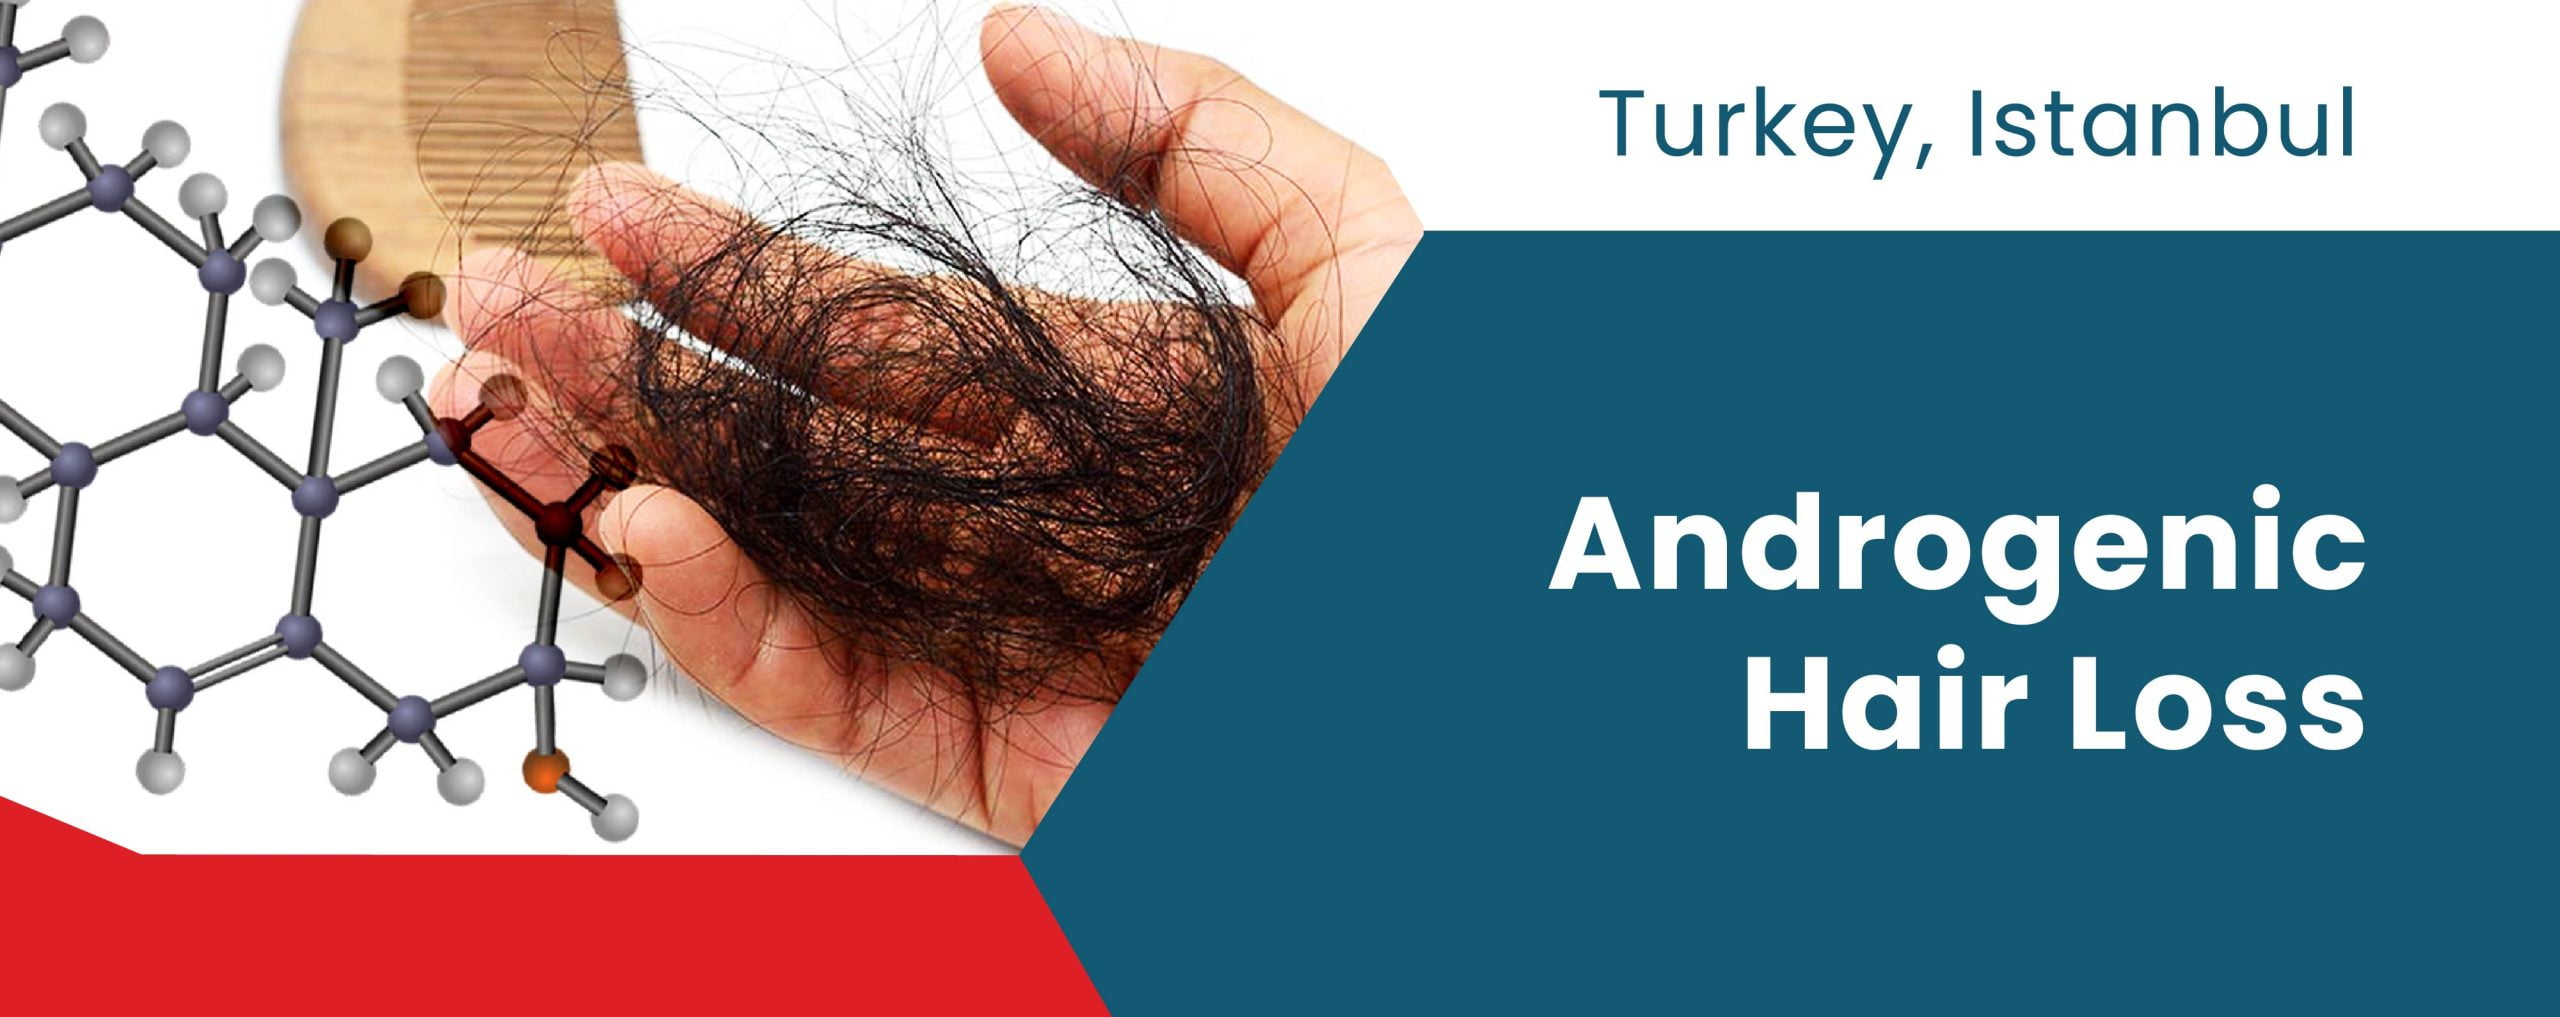 Androgenic Hair Loss | ClinMedica